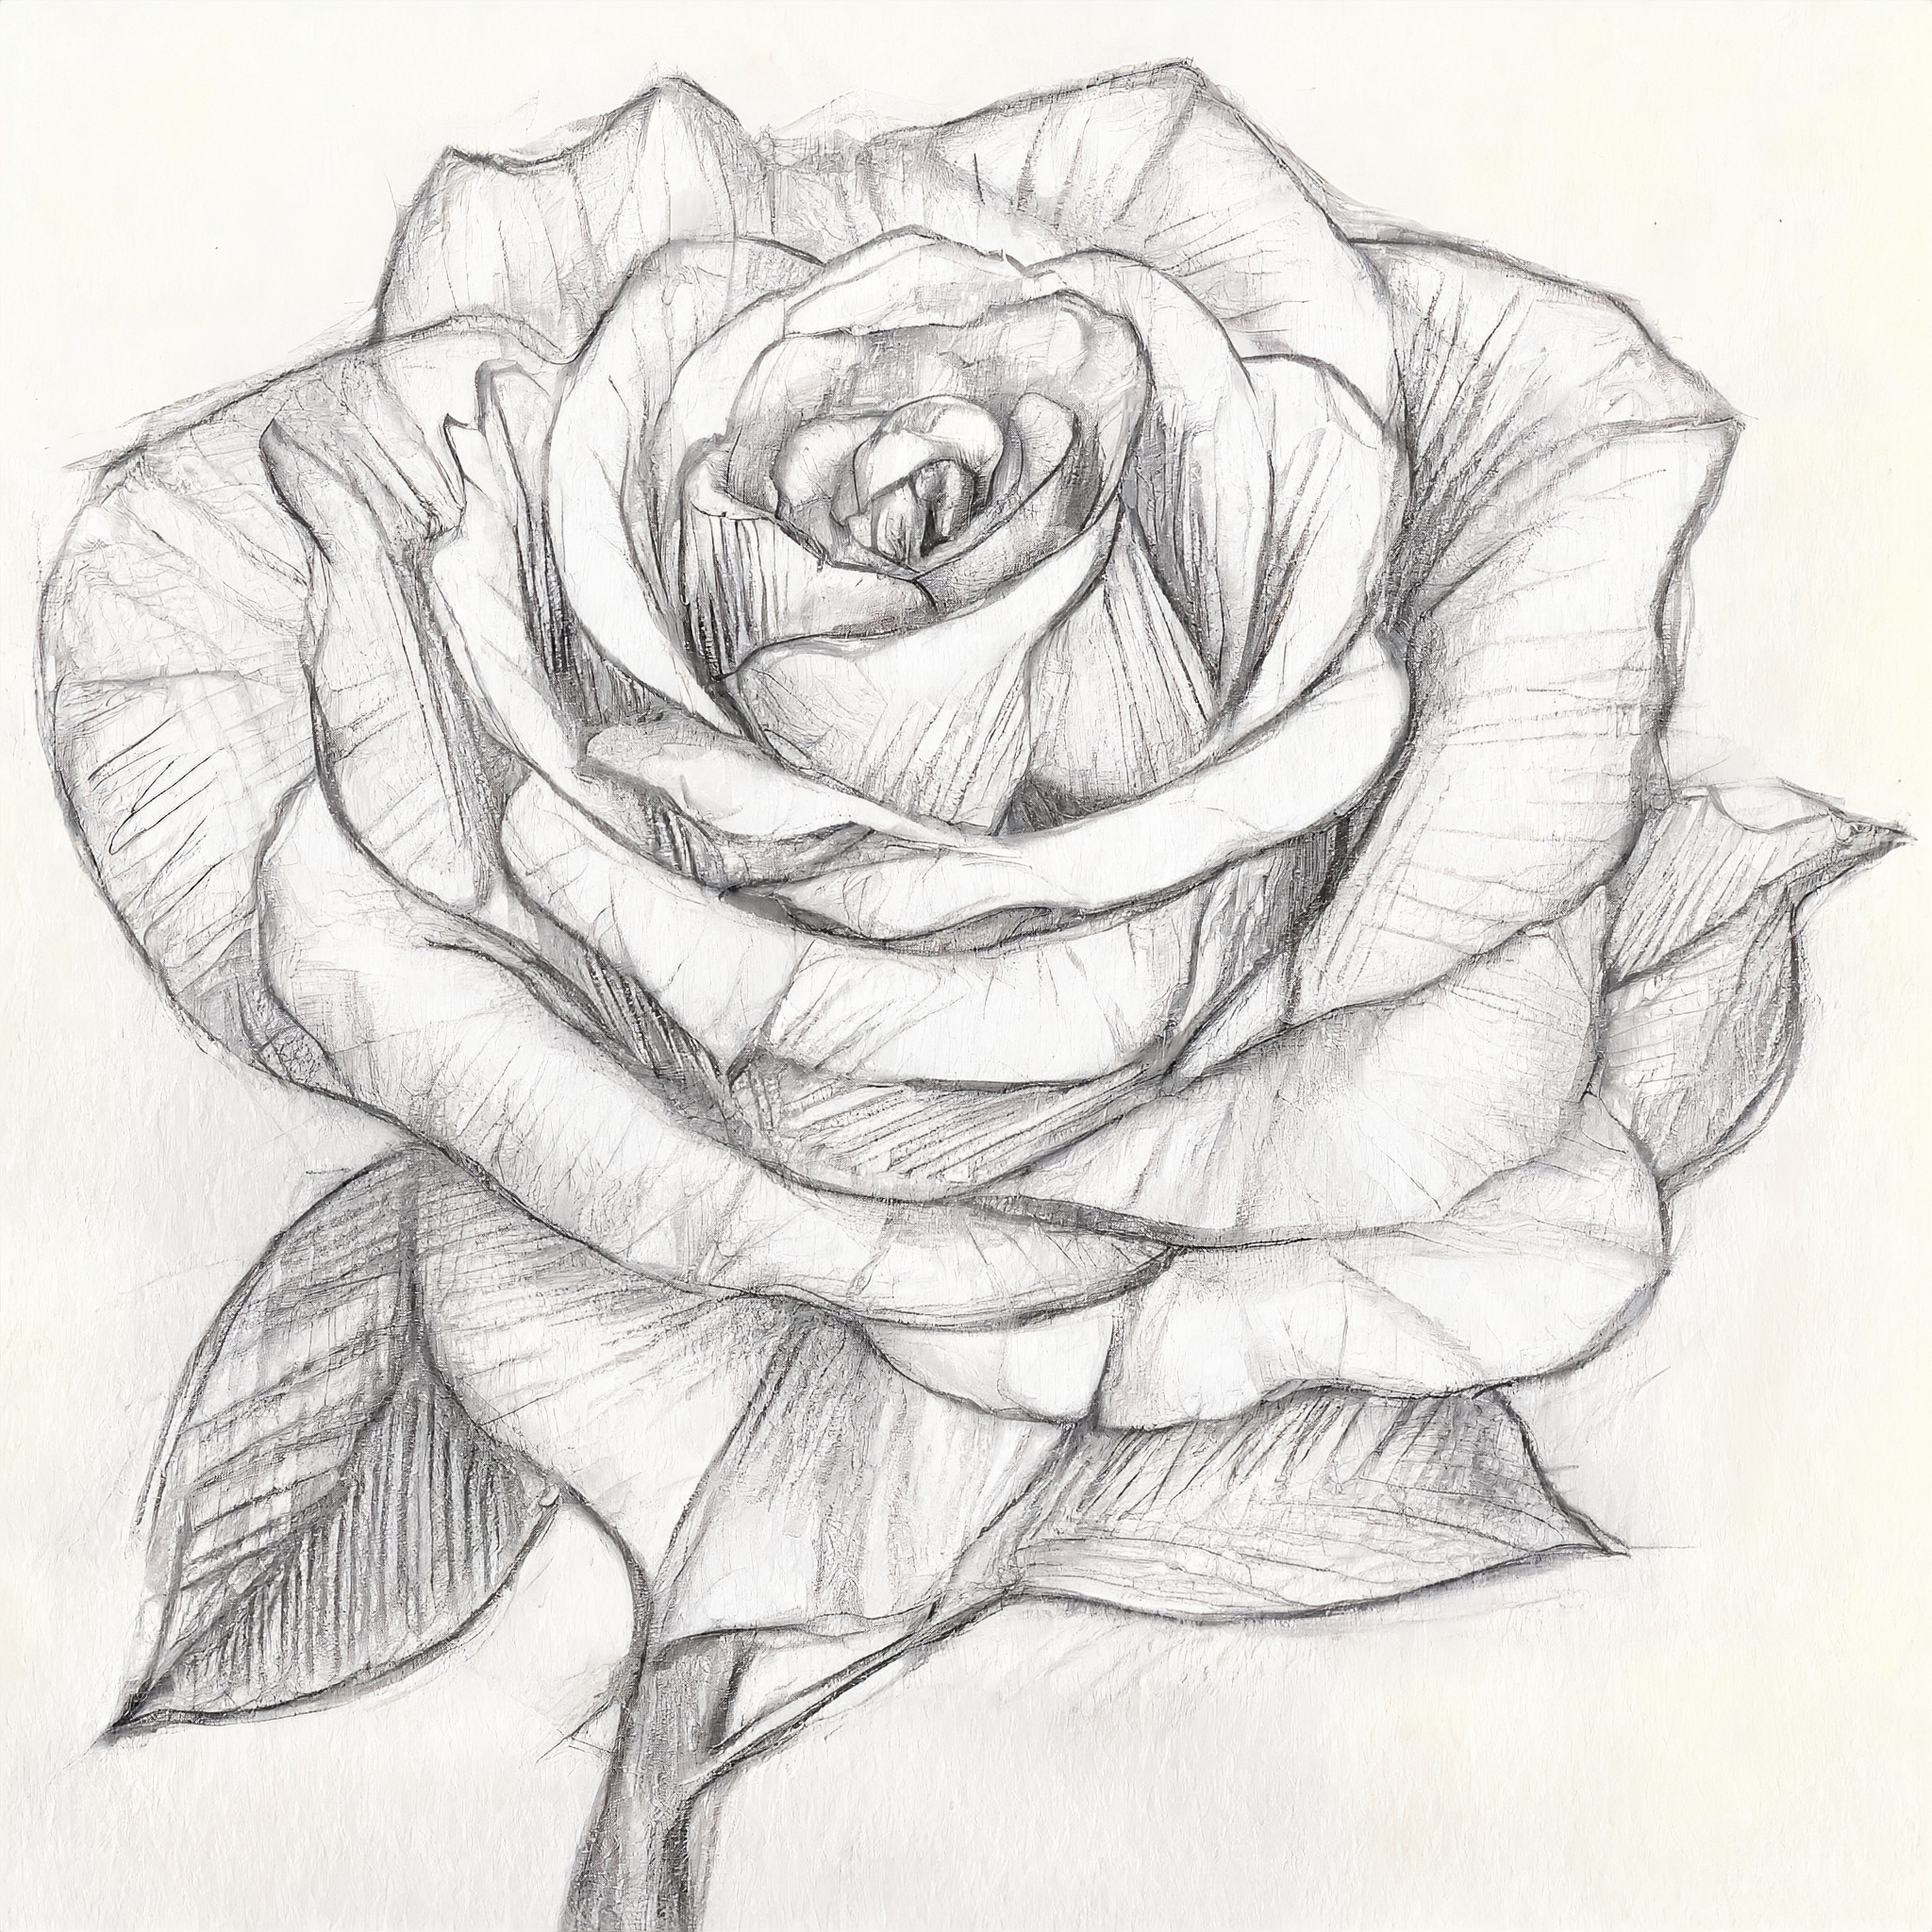 A Picture of Rose - Original Color Pencil Drawing of a Rose | eBay-saigonsouth.com.vn